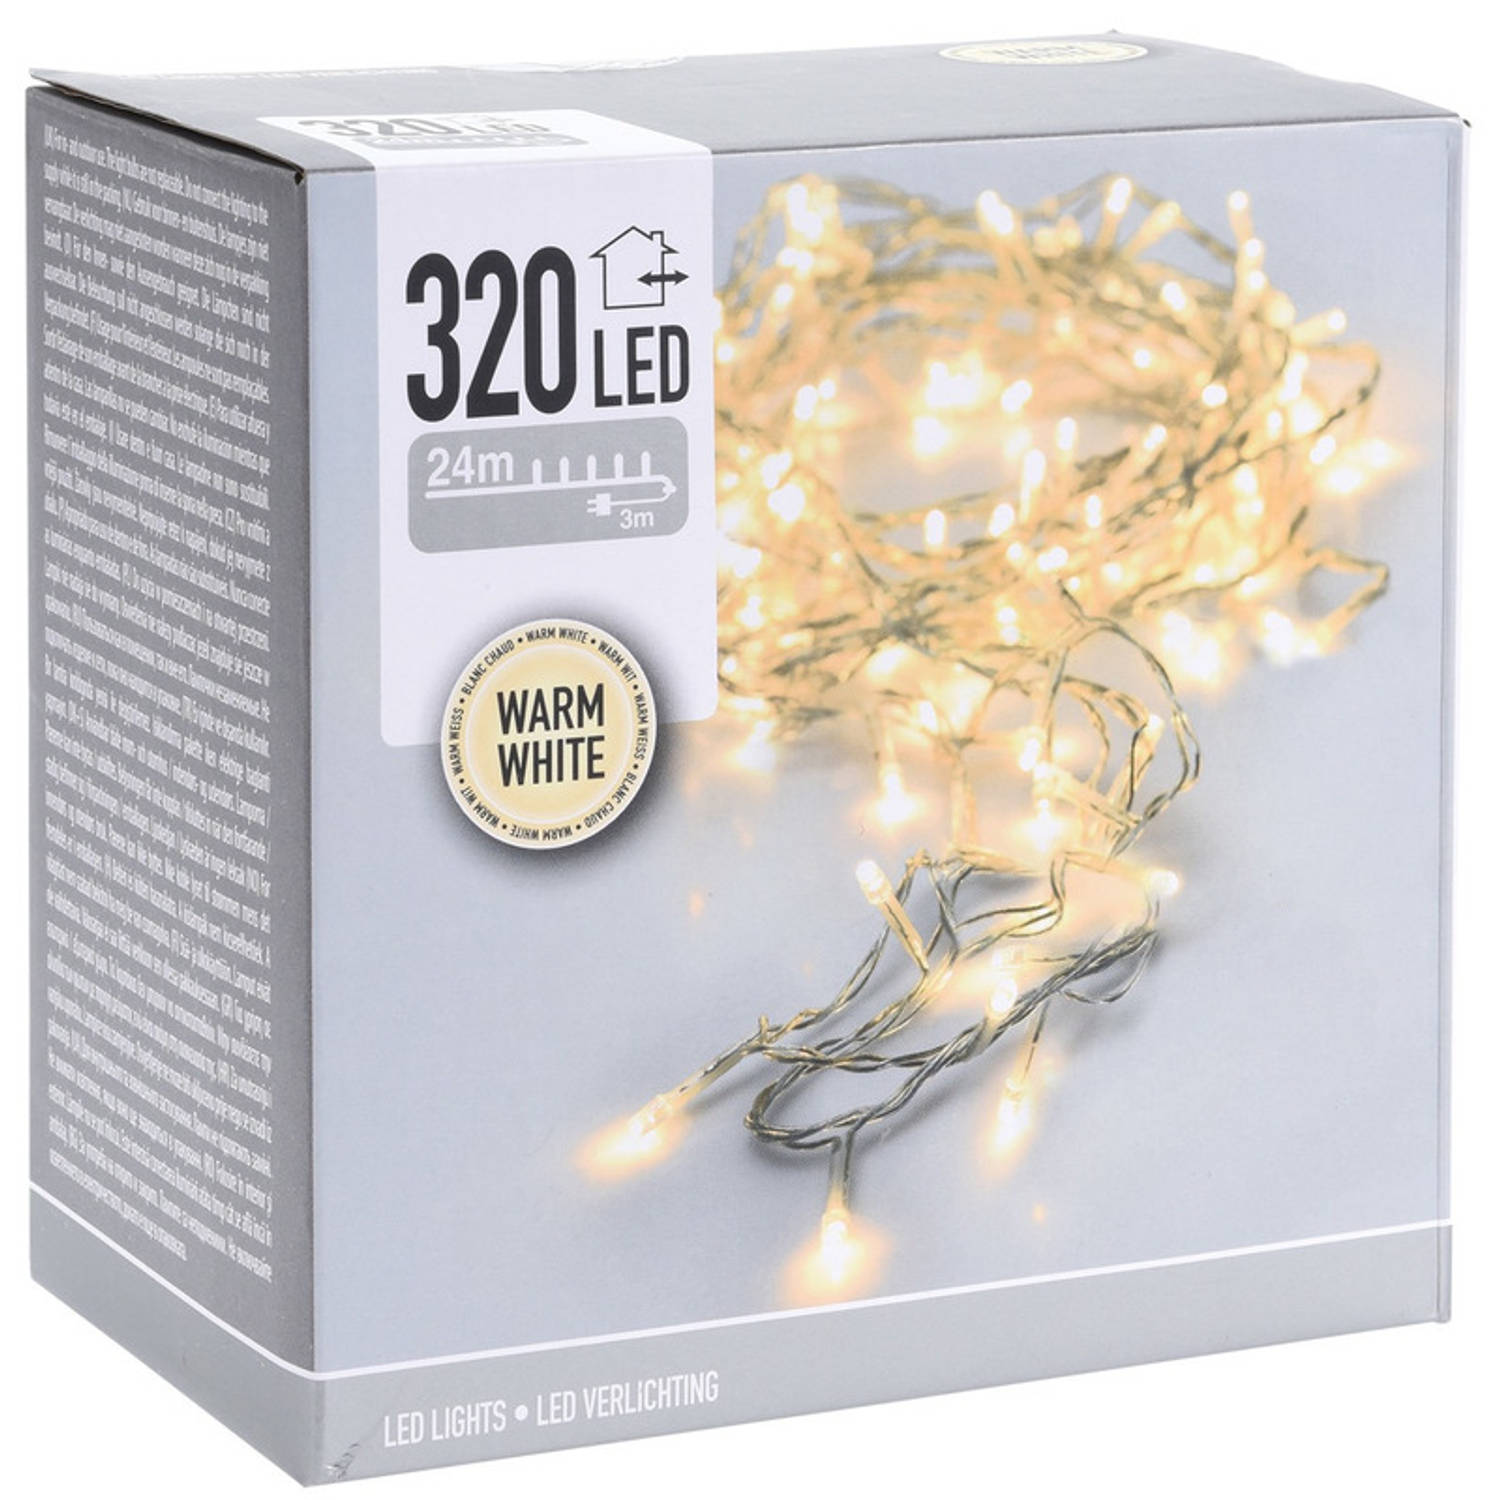 Kerstverlichting transparant snoer met 320 warm witte lampjes - 24 meter  - Kerstlampjes/kerstlichtjes - binnen/buiten